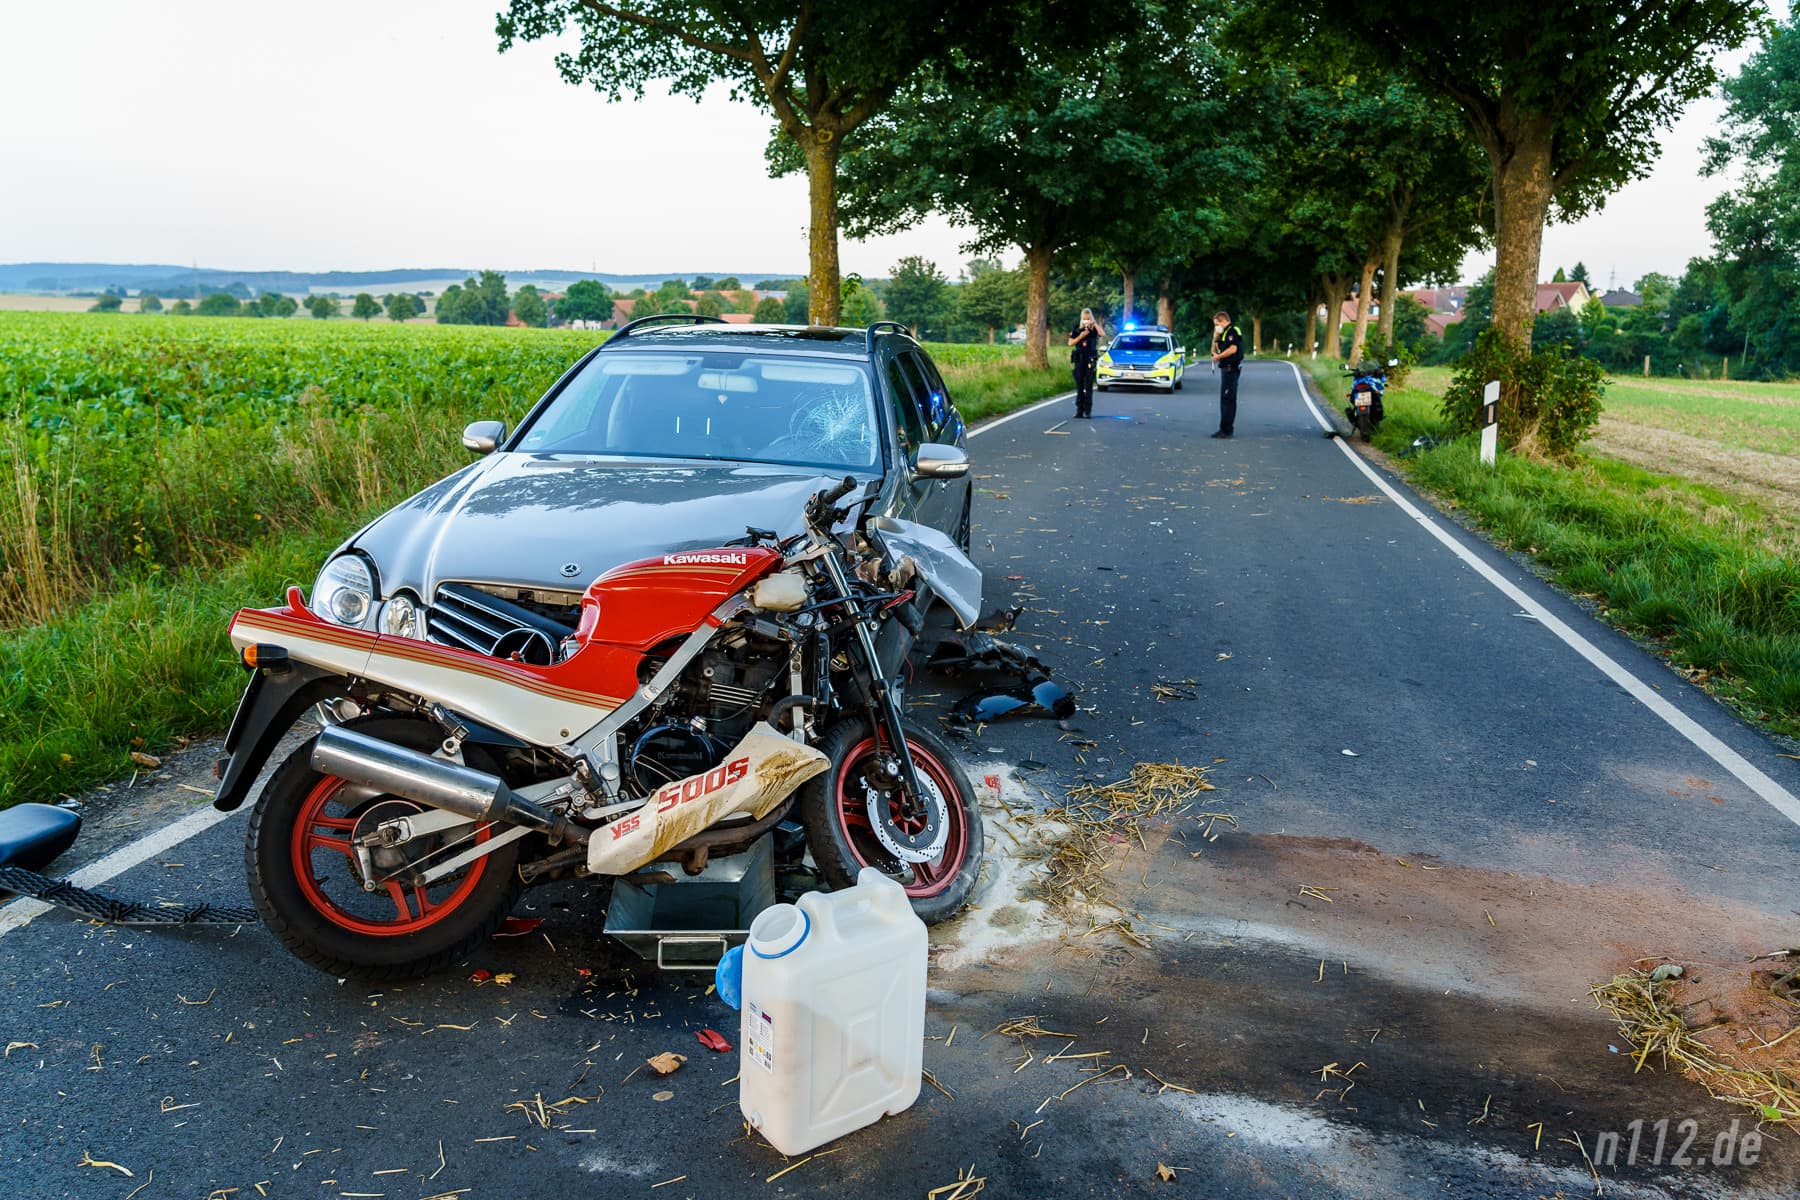 So war das Motorrad nicht nach dem Unfall stehengeblieben! (Foto: n112.de/Stefan Hillen)